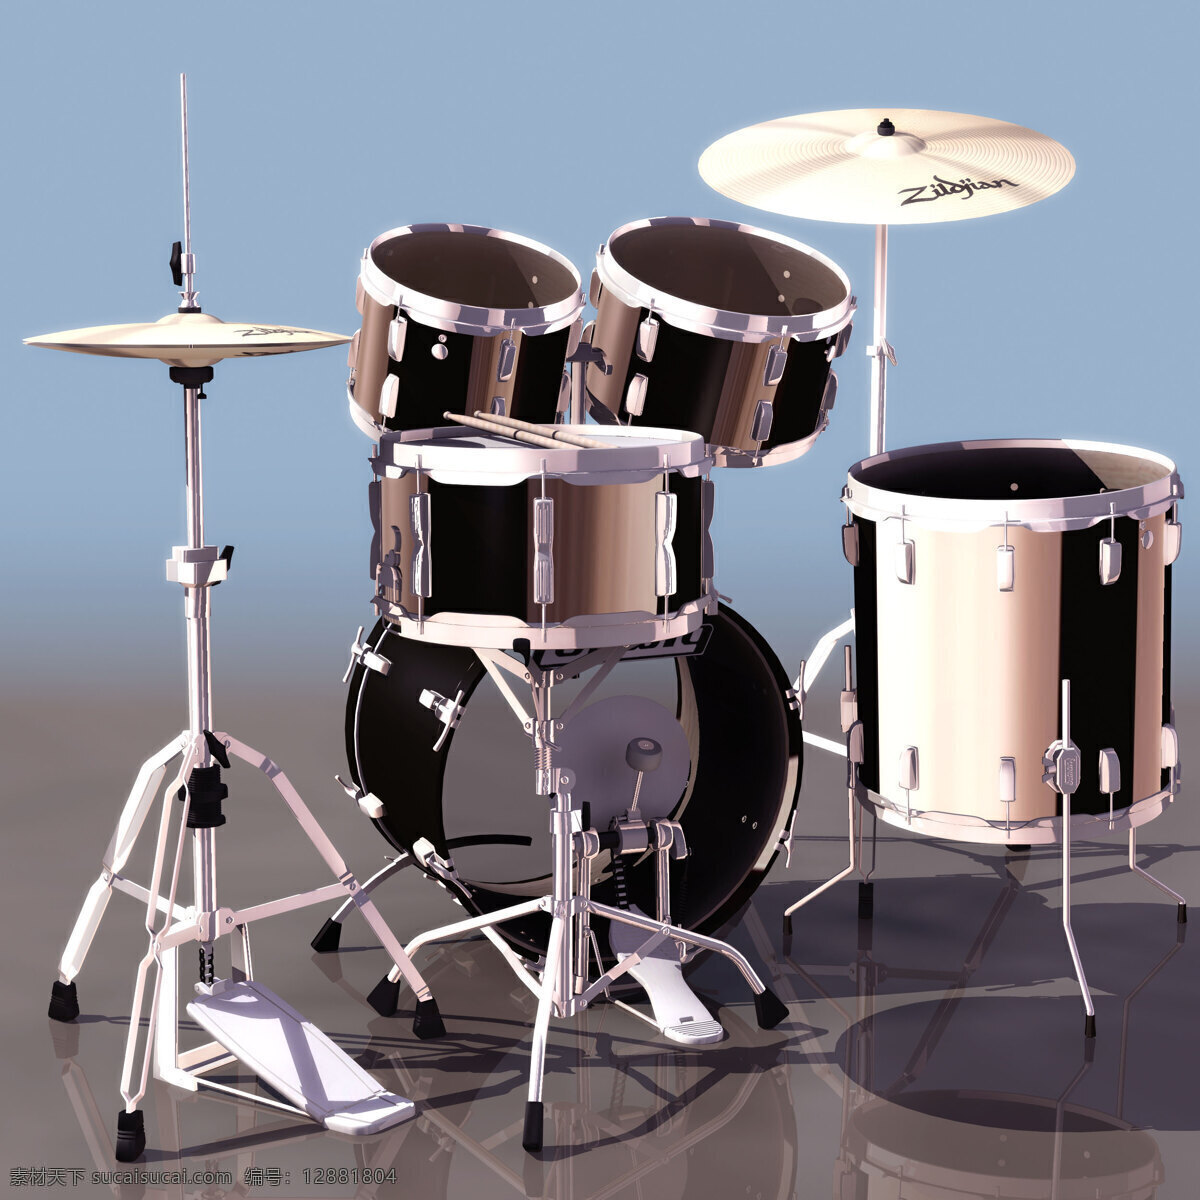 爵士鼓 乐器 模型 ludwigdr 文化用品 乐器模型 3d模型素材 电器模型